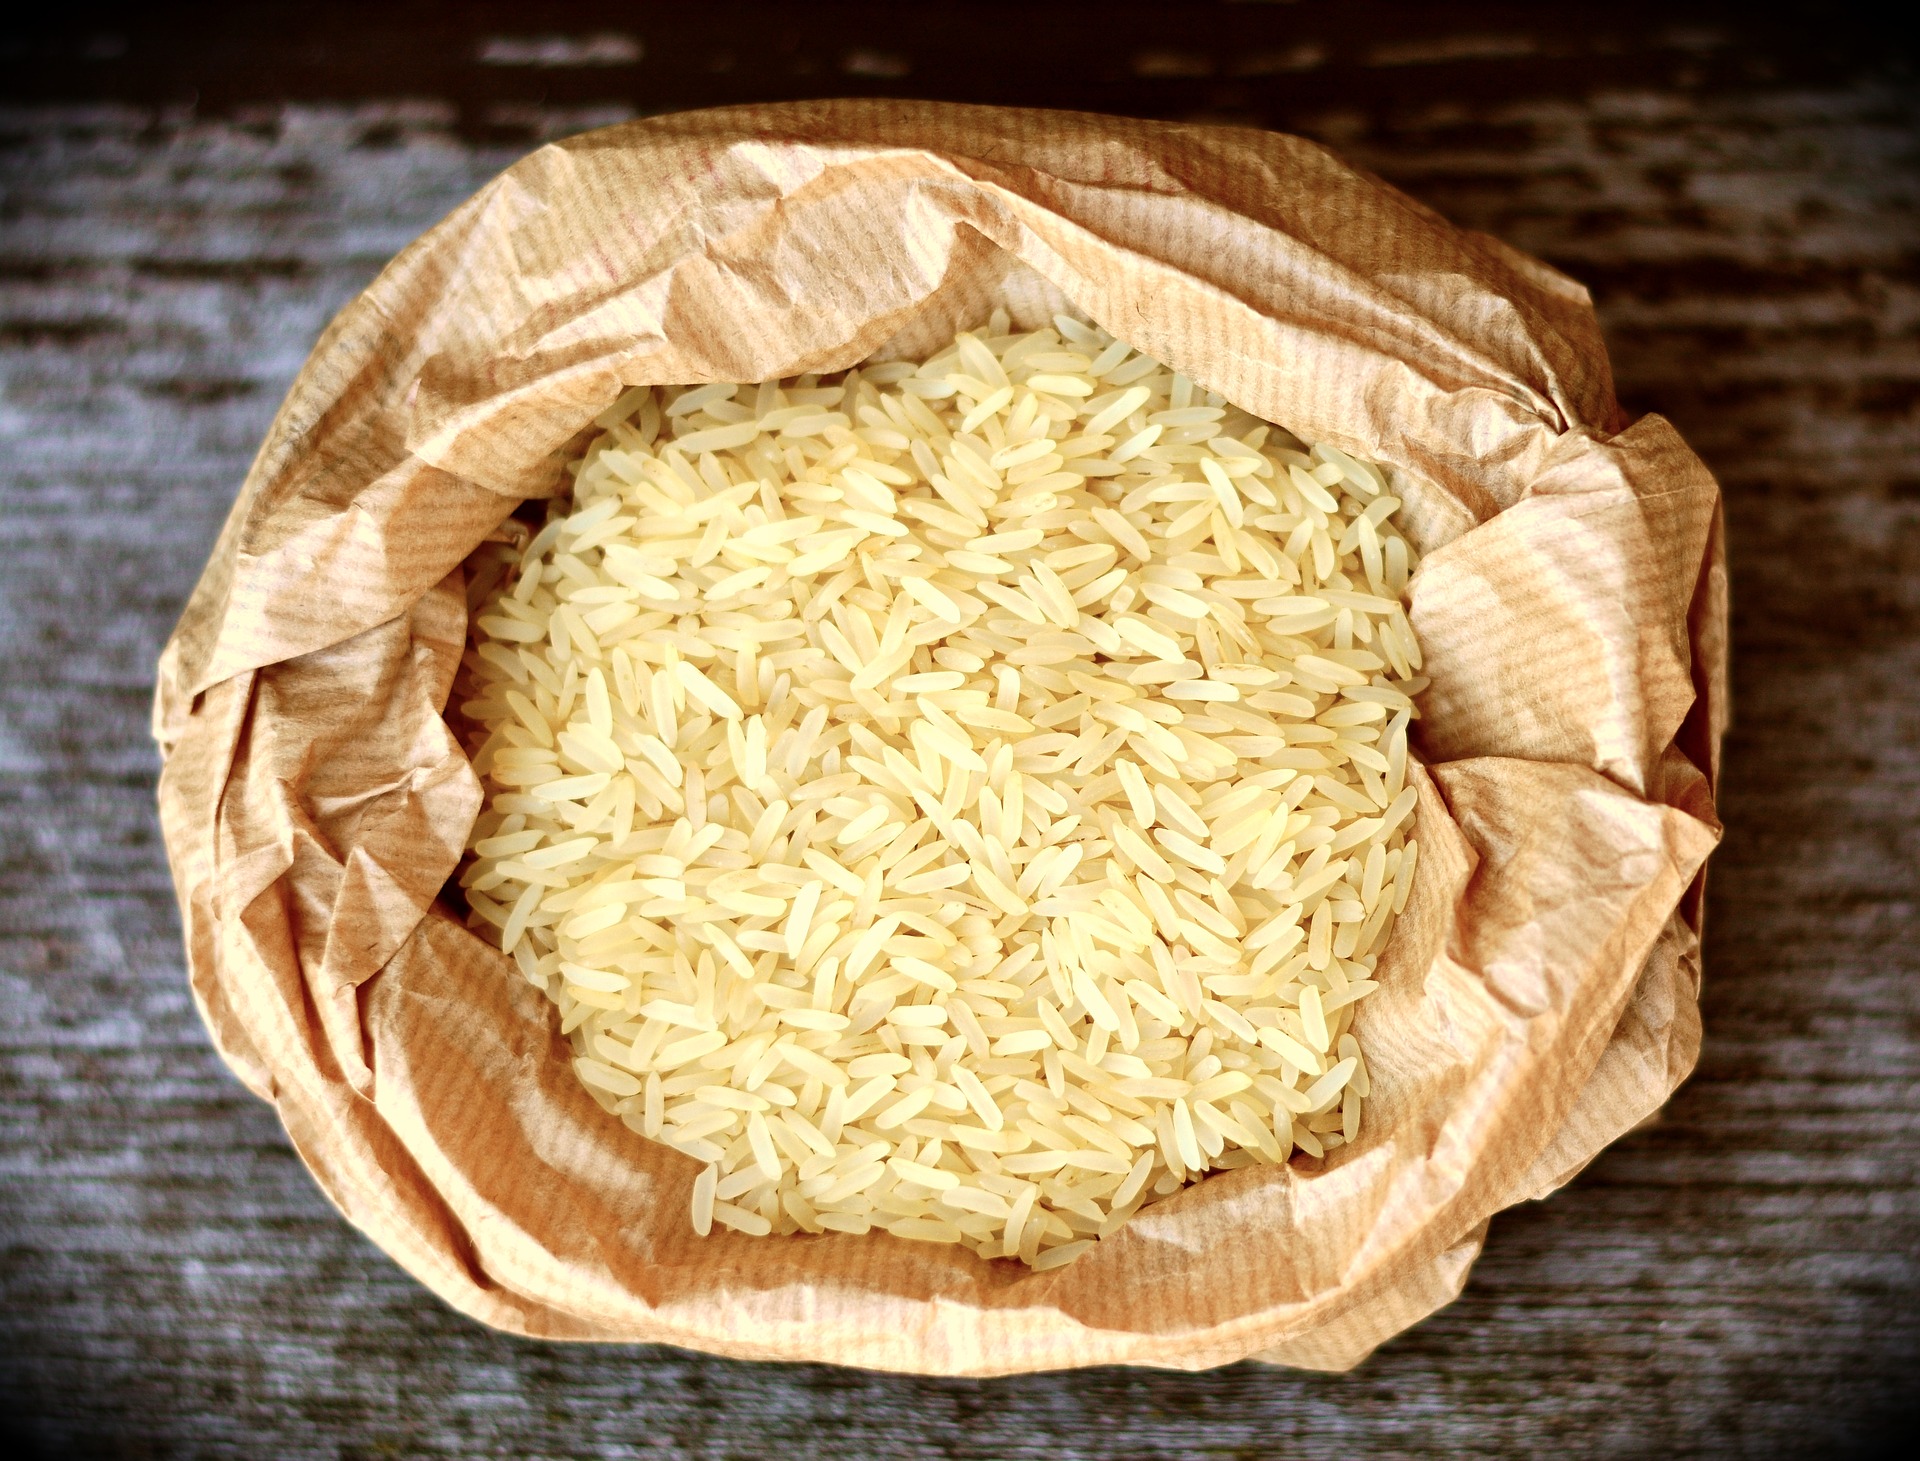 in questa foto si vede un sacchetto contente del riso